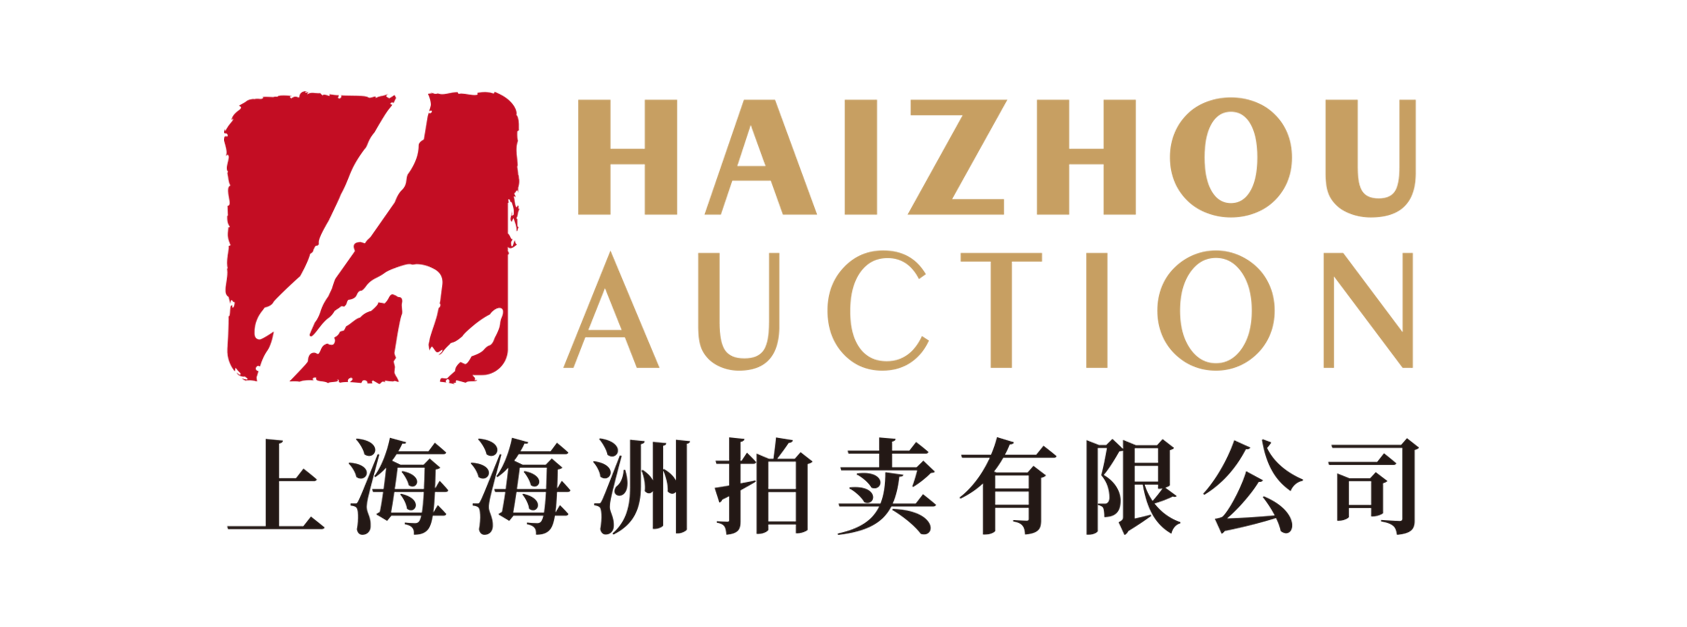 上海海洲拍卖有限公司 Logo